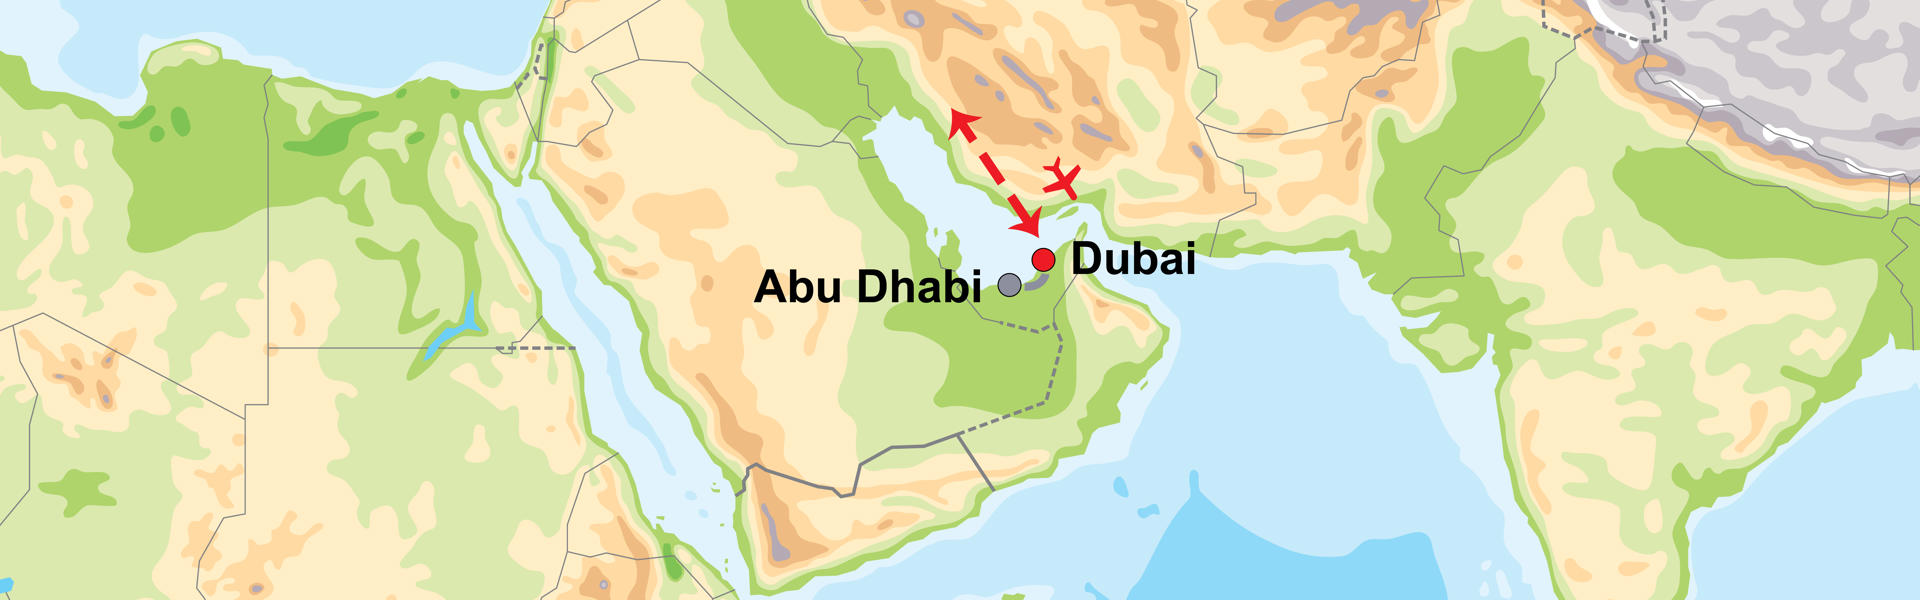 Dubai-Abu-dhabi-2018